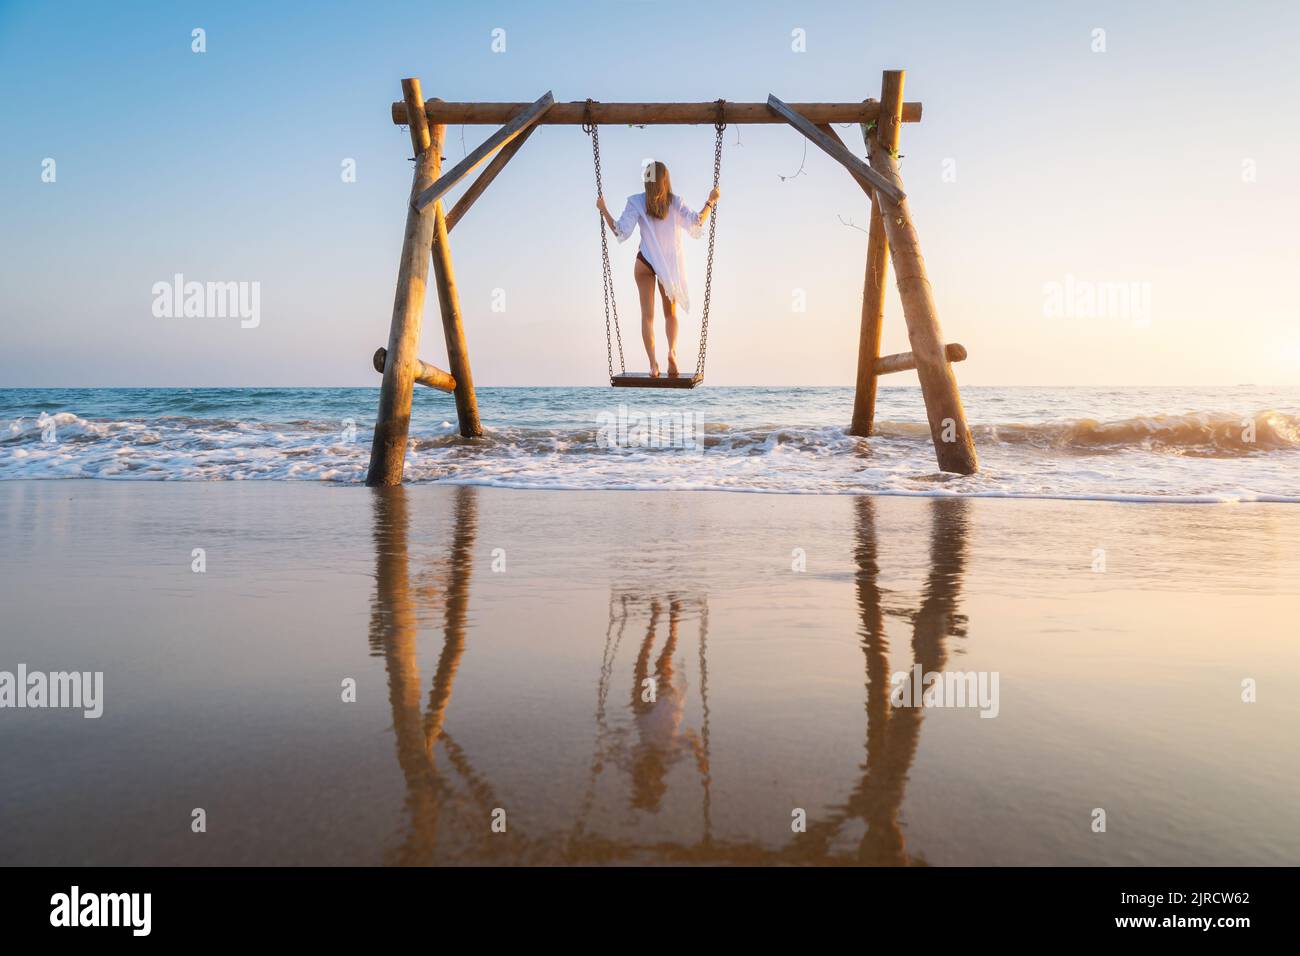 Glückliche junge Frau auf hölzerner Schaukel im Wasser, schönes blaues Meer Stockfoto